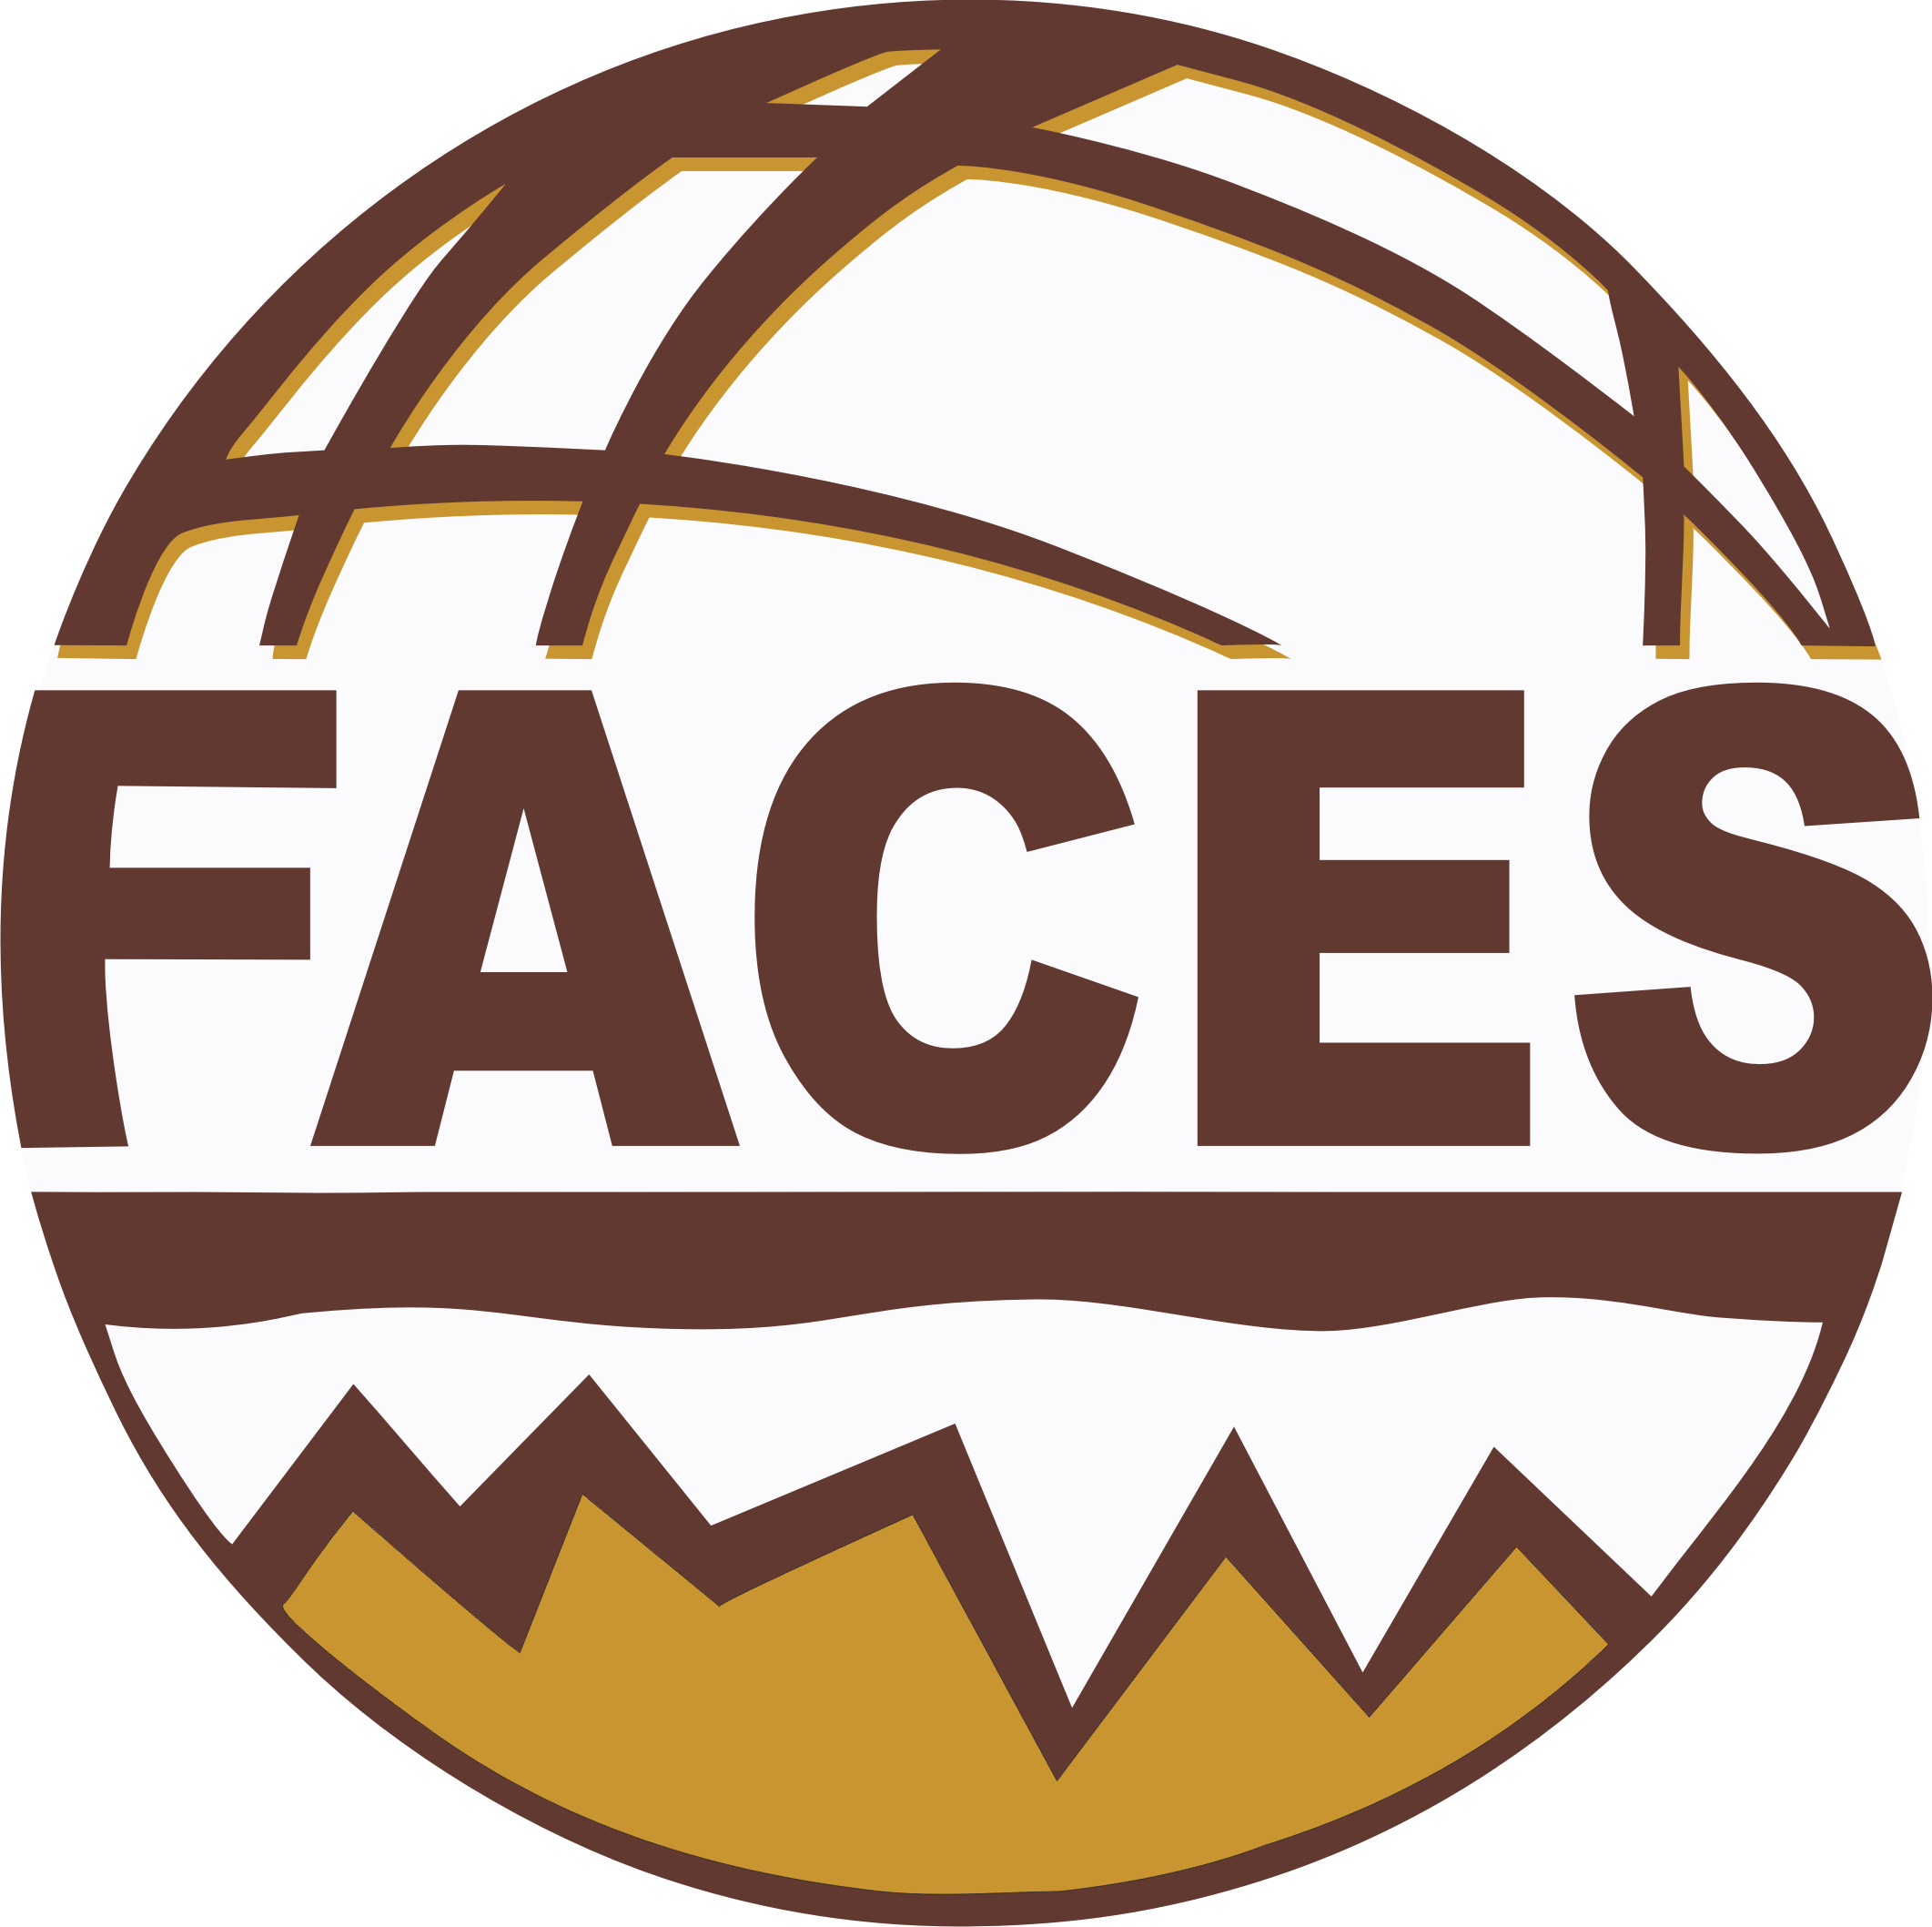 FACES logo